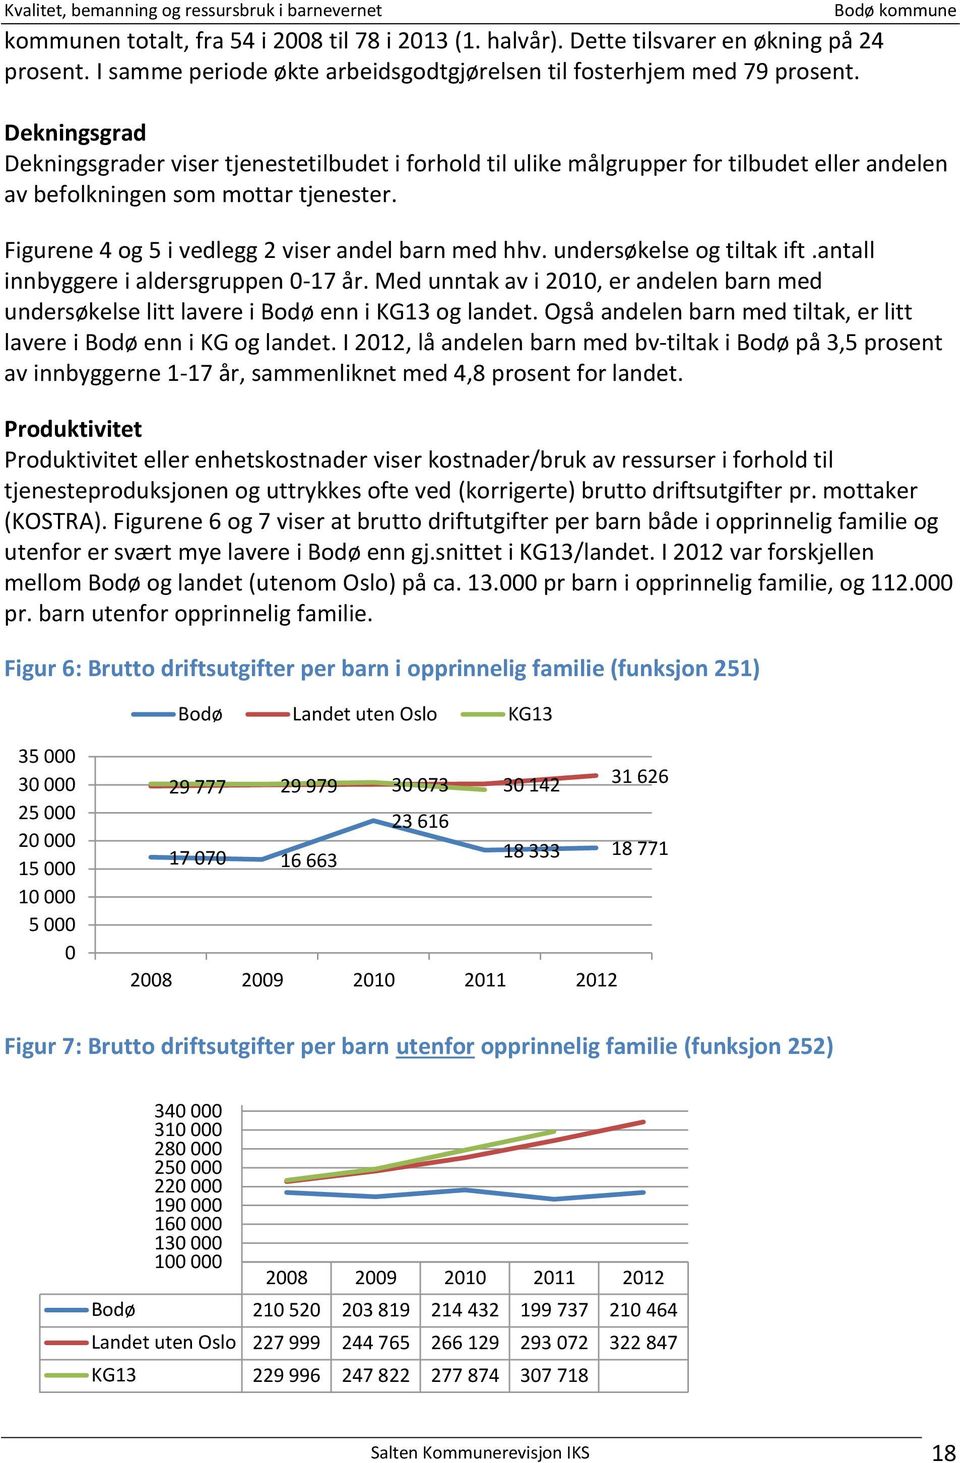 undersøkelse og tiltak ift.antall innbyggere i aldersgruppen 0-17 år. Med unntak av i 2010, er andelen barn med undersøkelse litt lavere i Bodø enn i KG13 og landet.